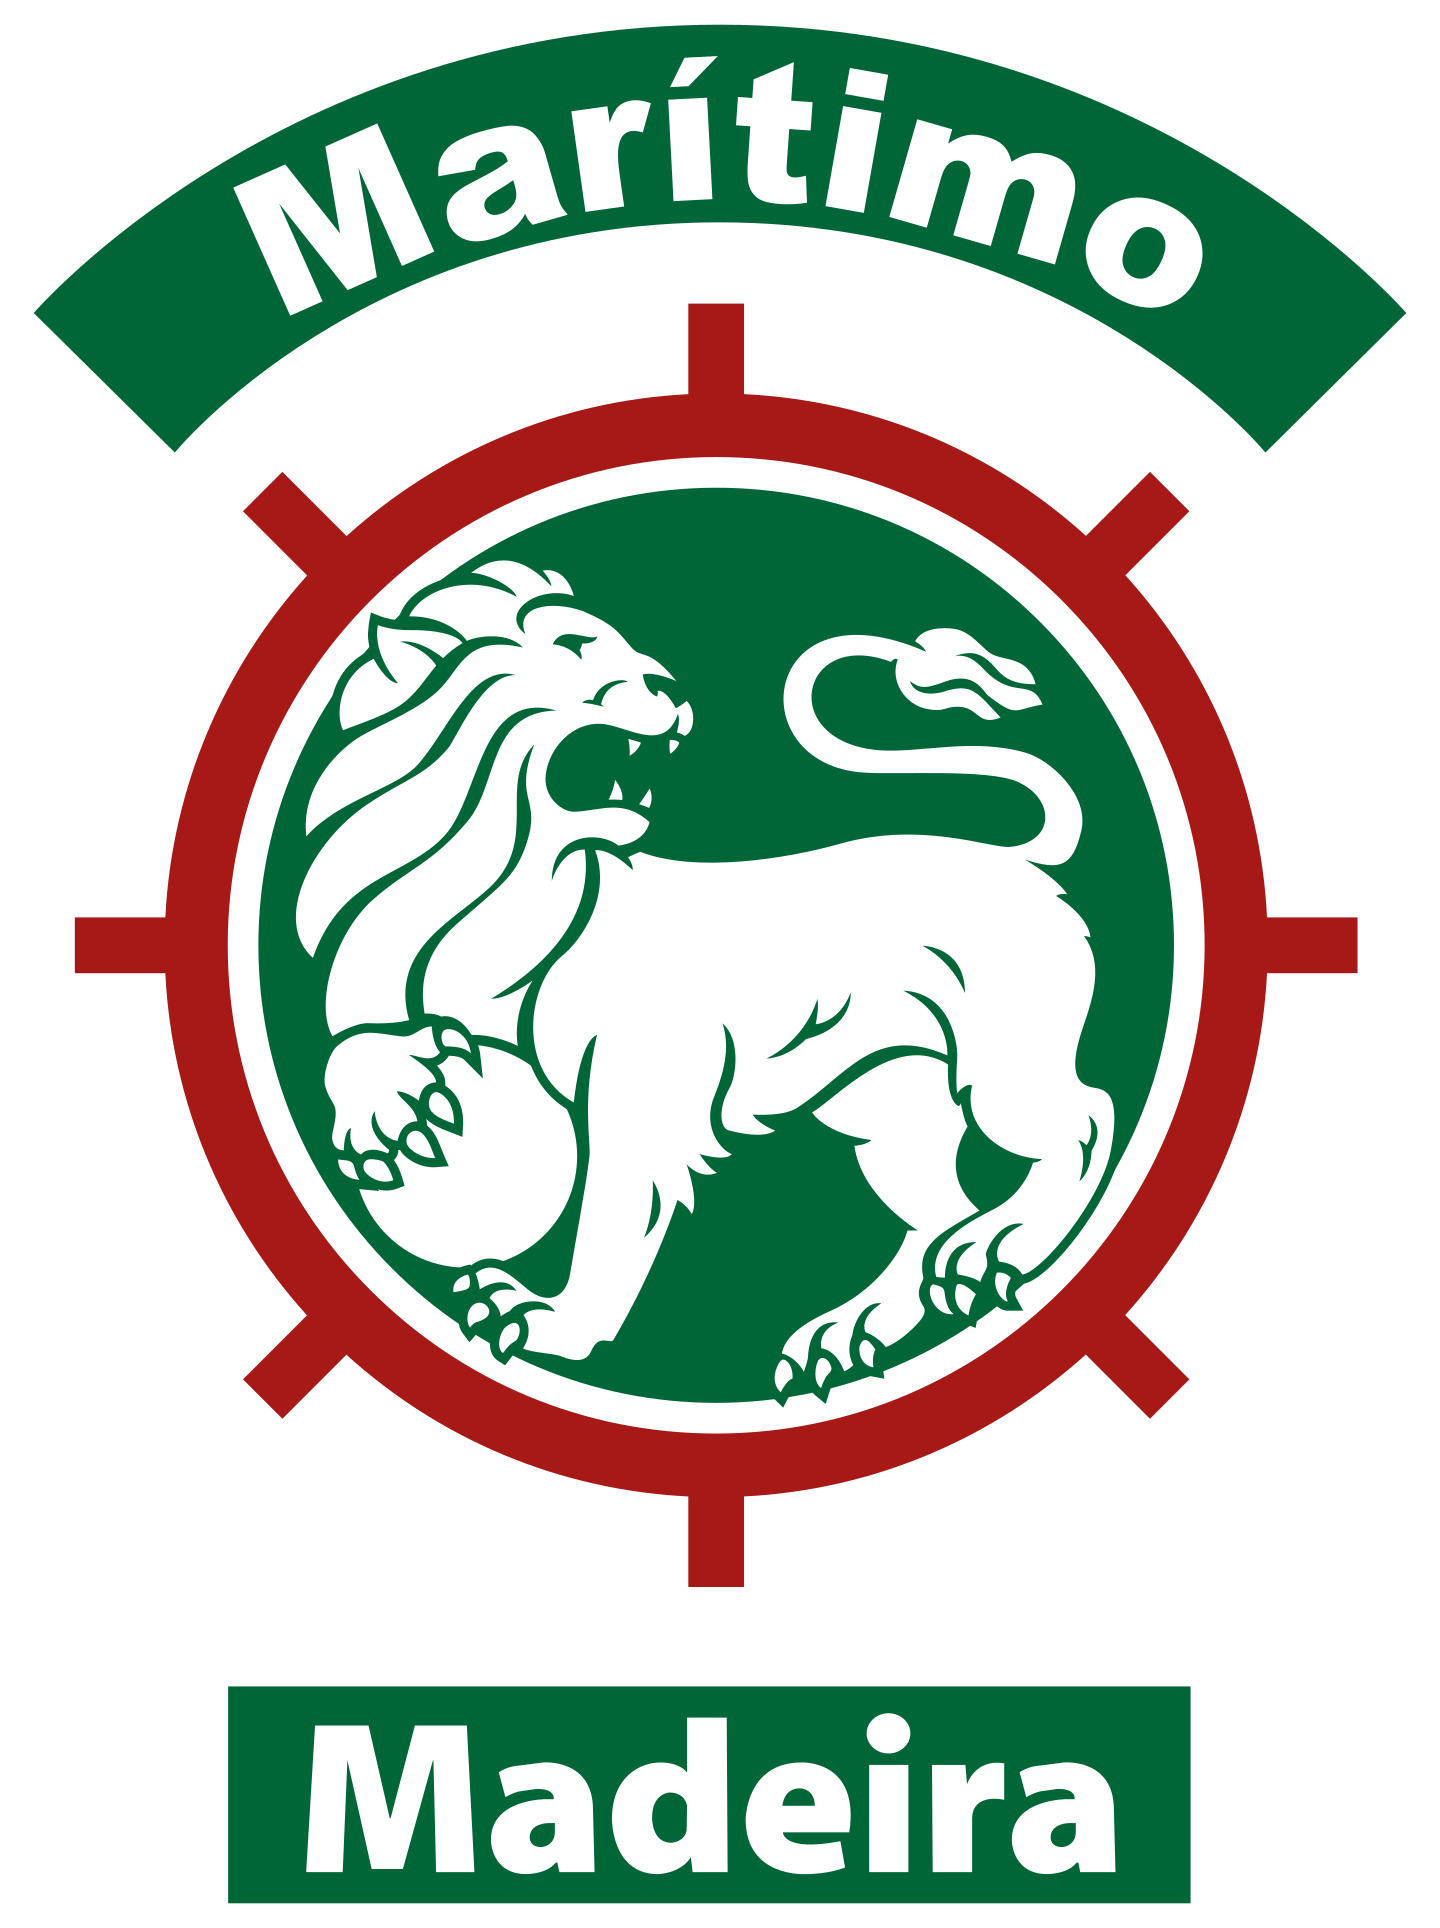 cs maritimo logo 2 - Club Sport Marítimo Logo